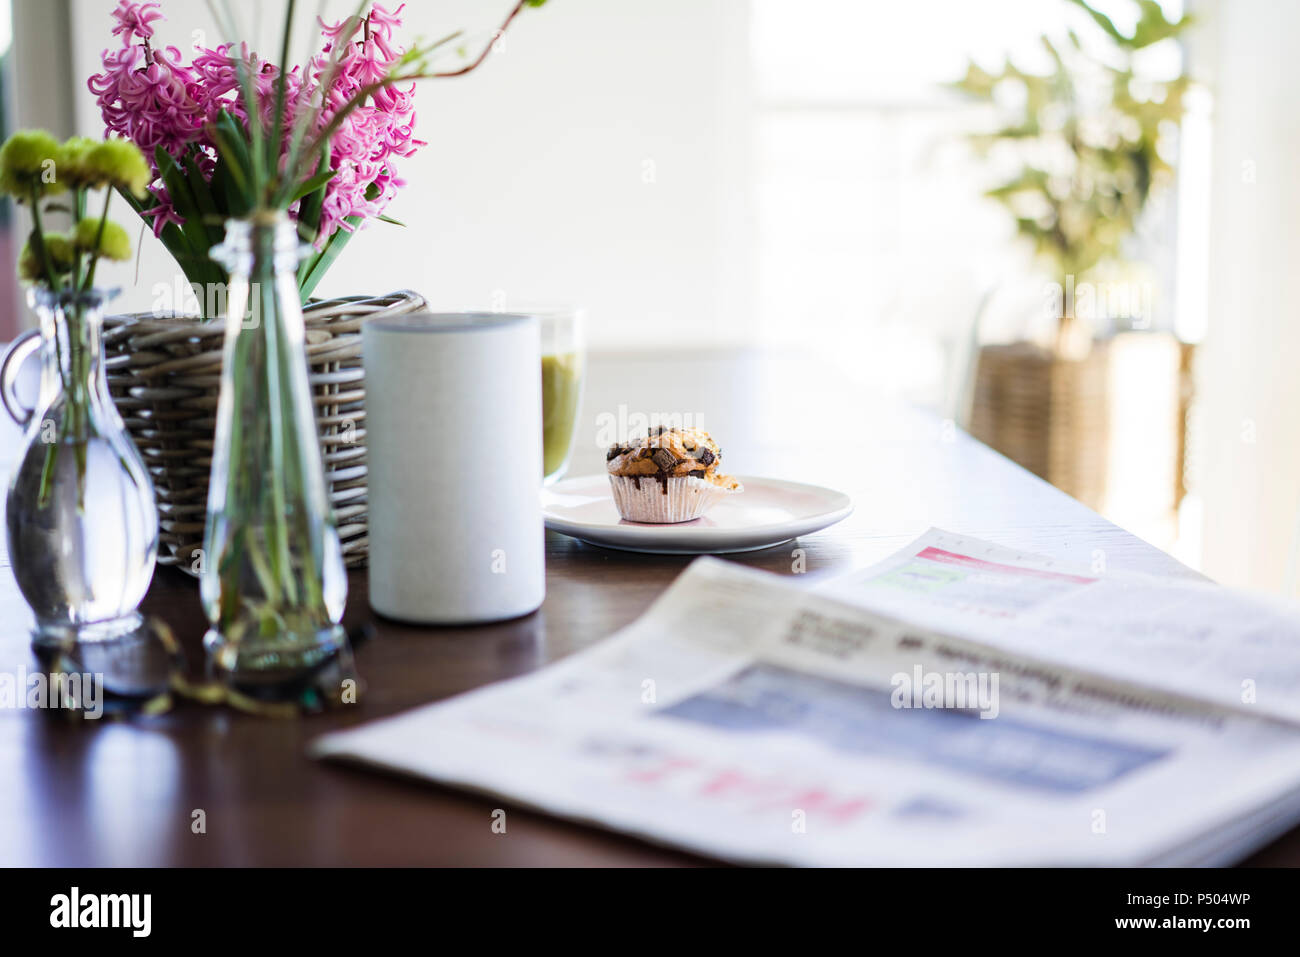 Zeitung, Blumenvasen, Lautsprecher und Muffin auf Tisch Stockfoto